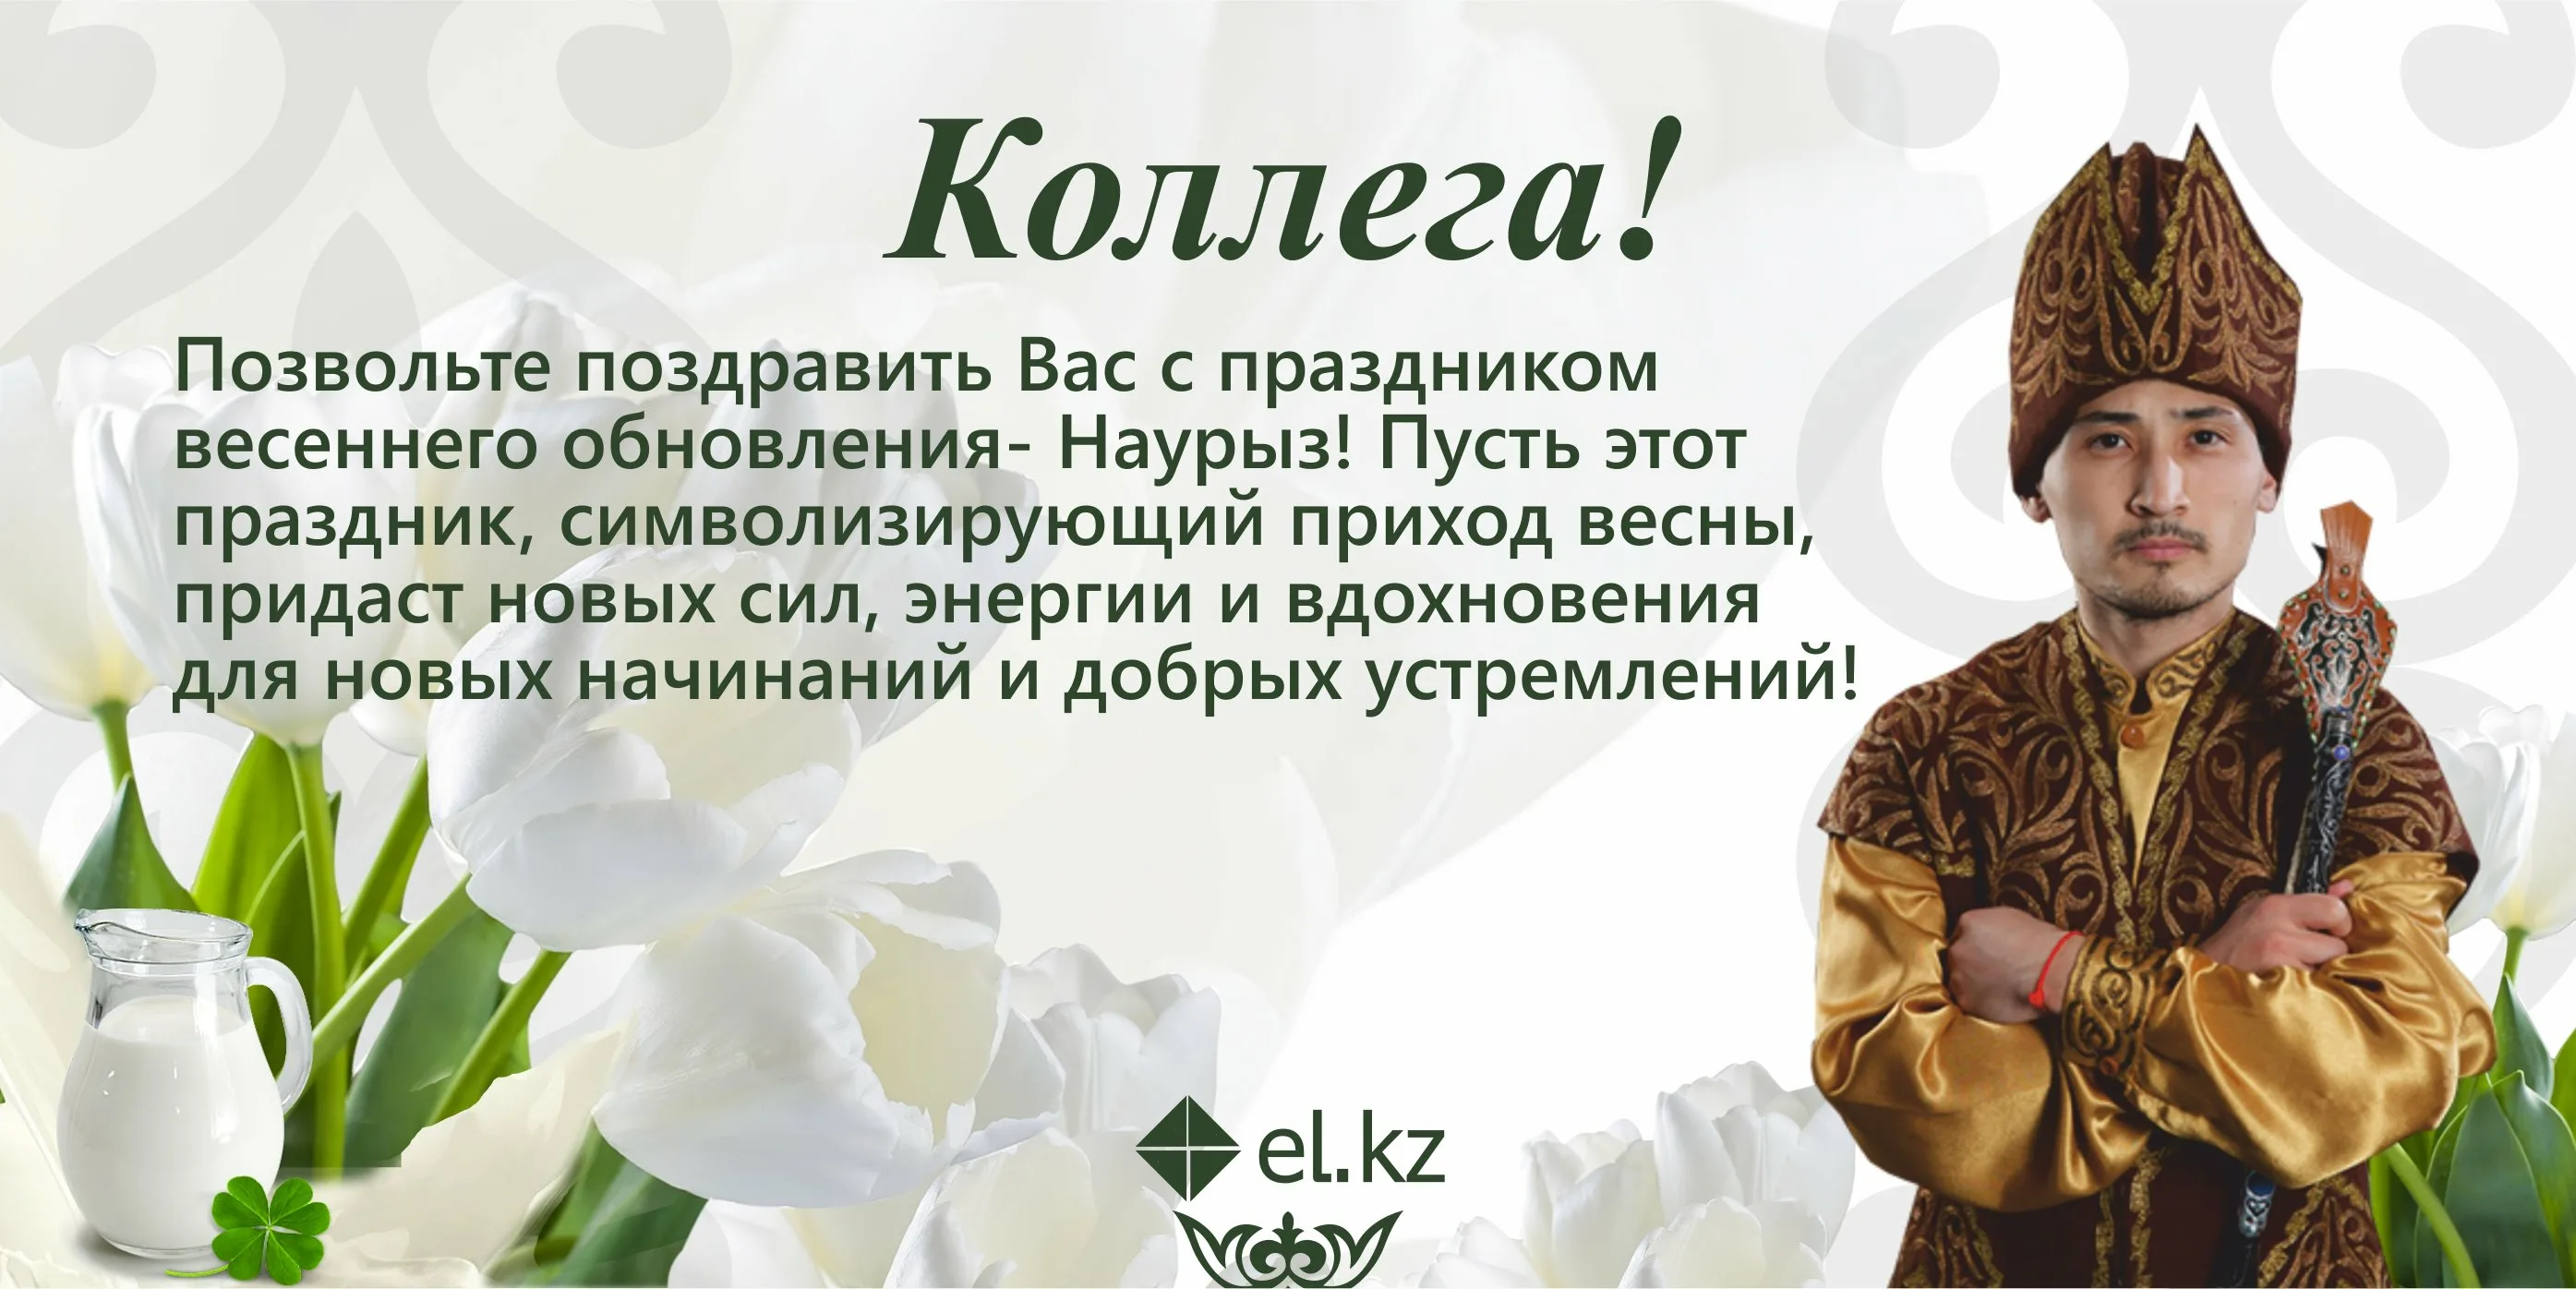 Наурыз всех приглашает текст. Наурыз поздравление. Поздравление на казахском. Поздравление с Наурызом на казахском. Наурыз открытки с поздравлениями на казахском языке.